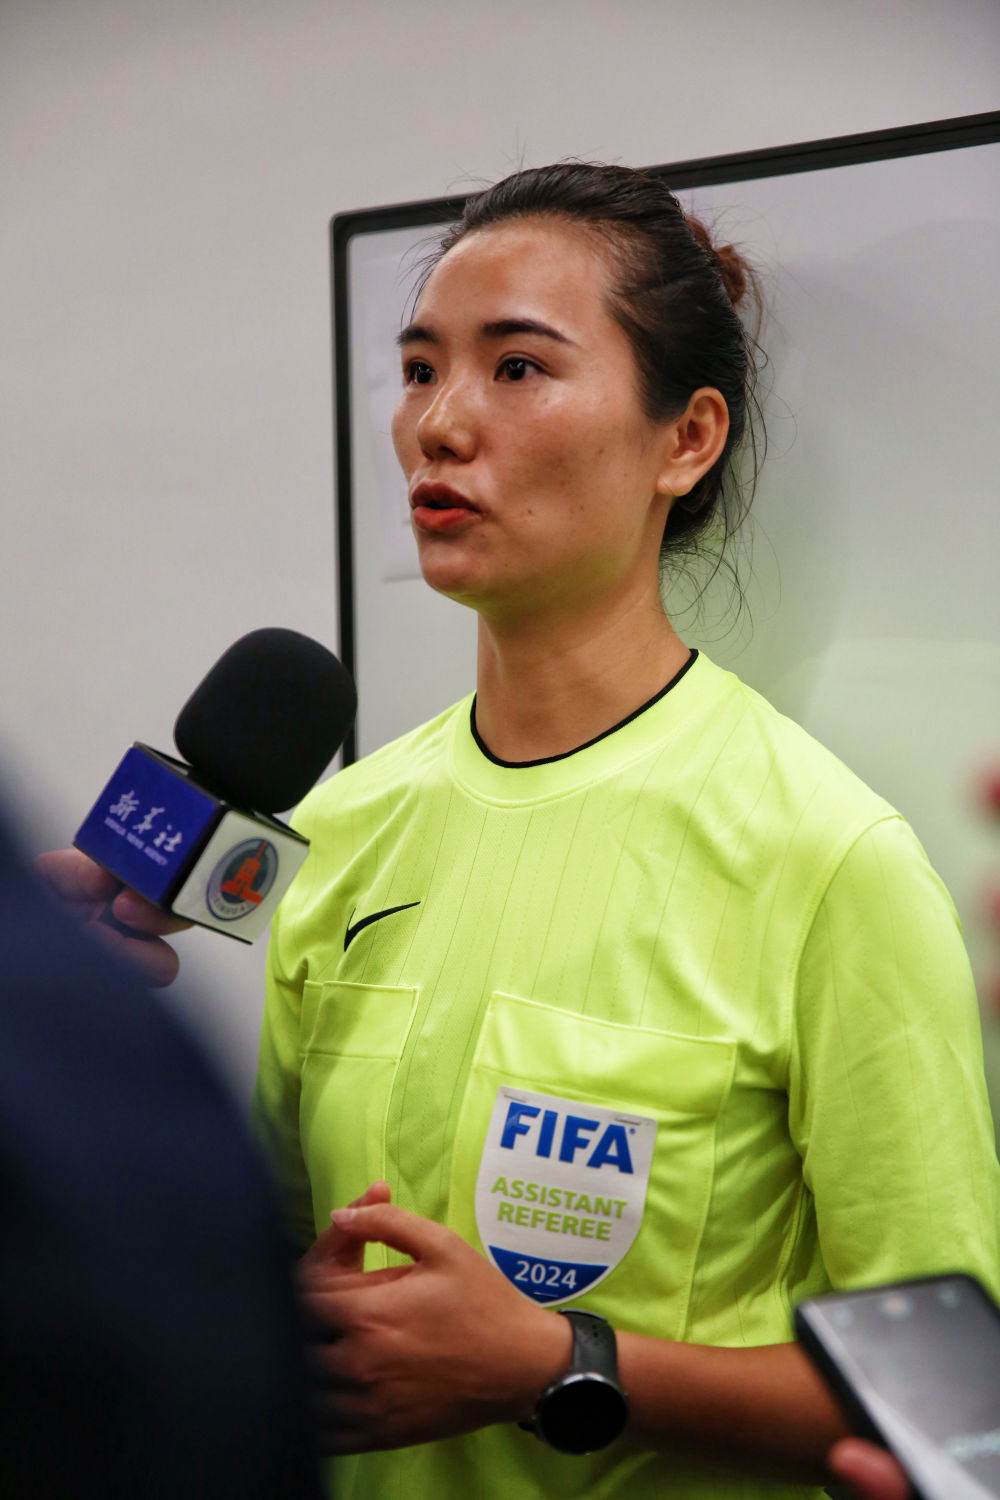 谢丽君成为国内首位执裁男足顶级职业联赛的女裁判